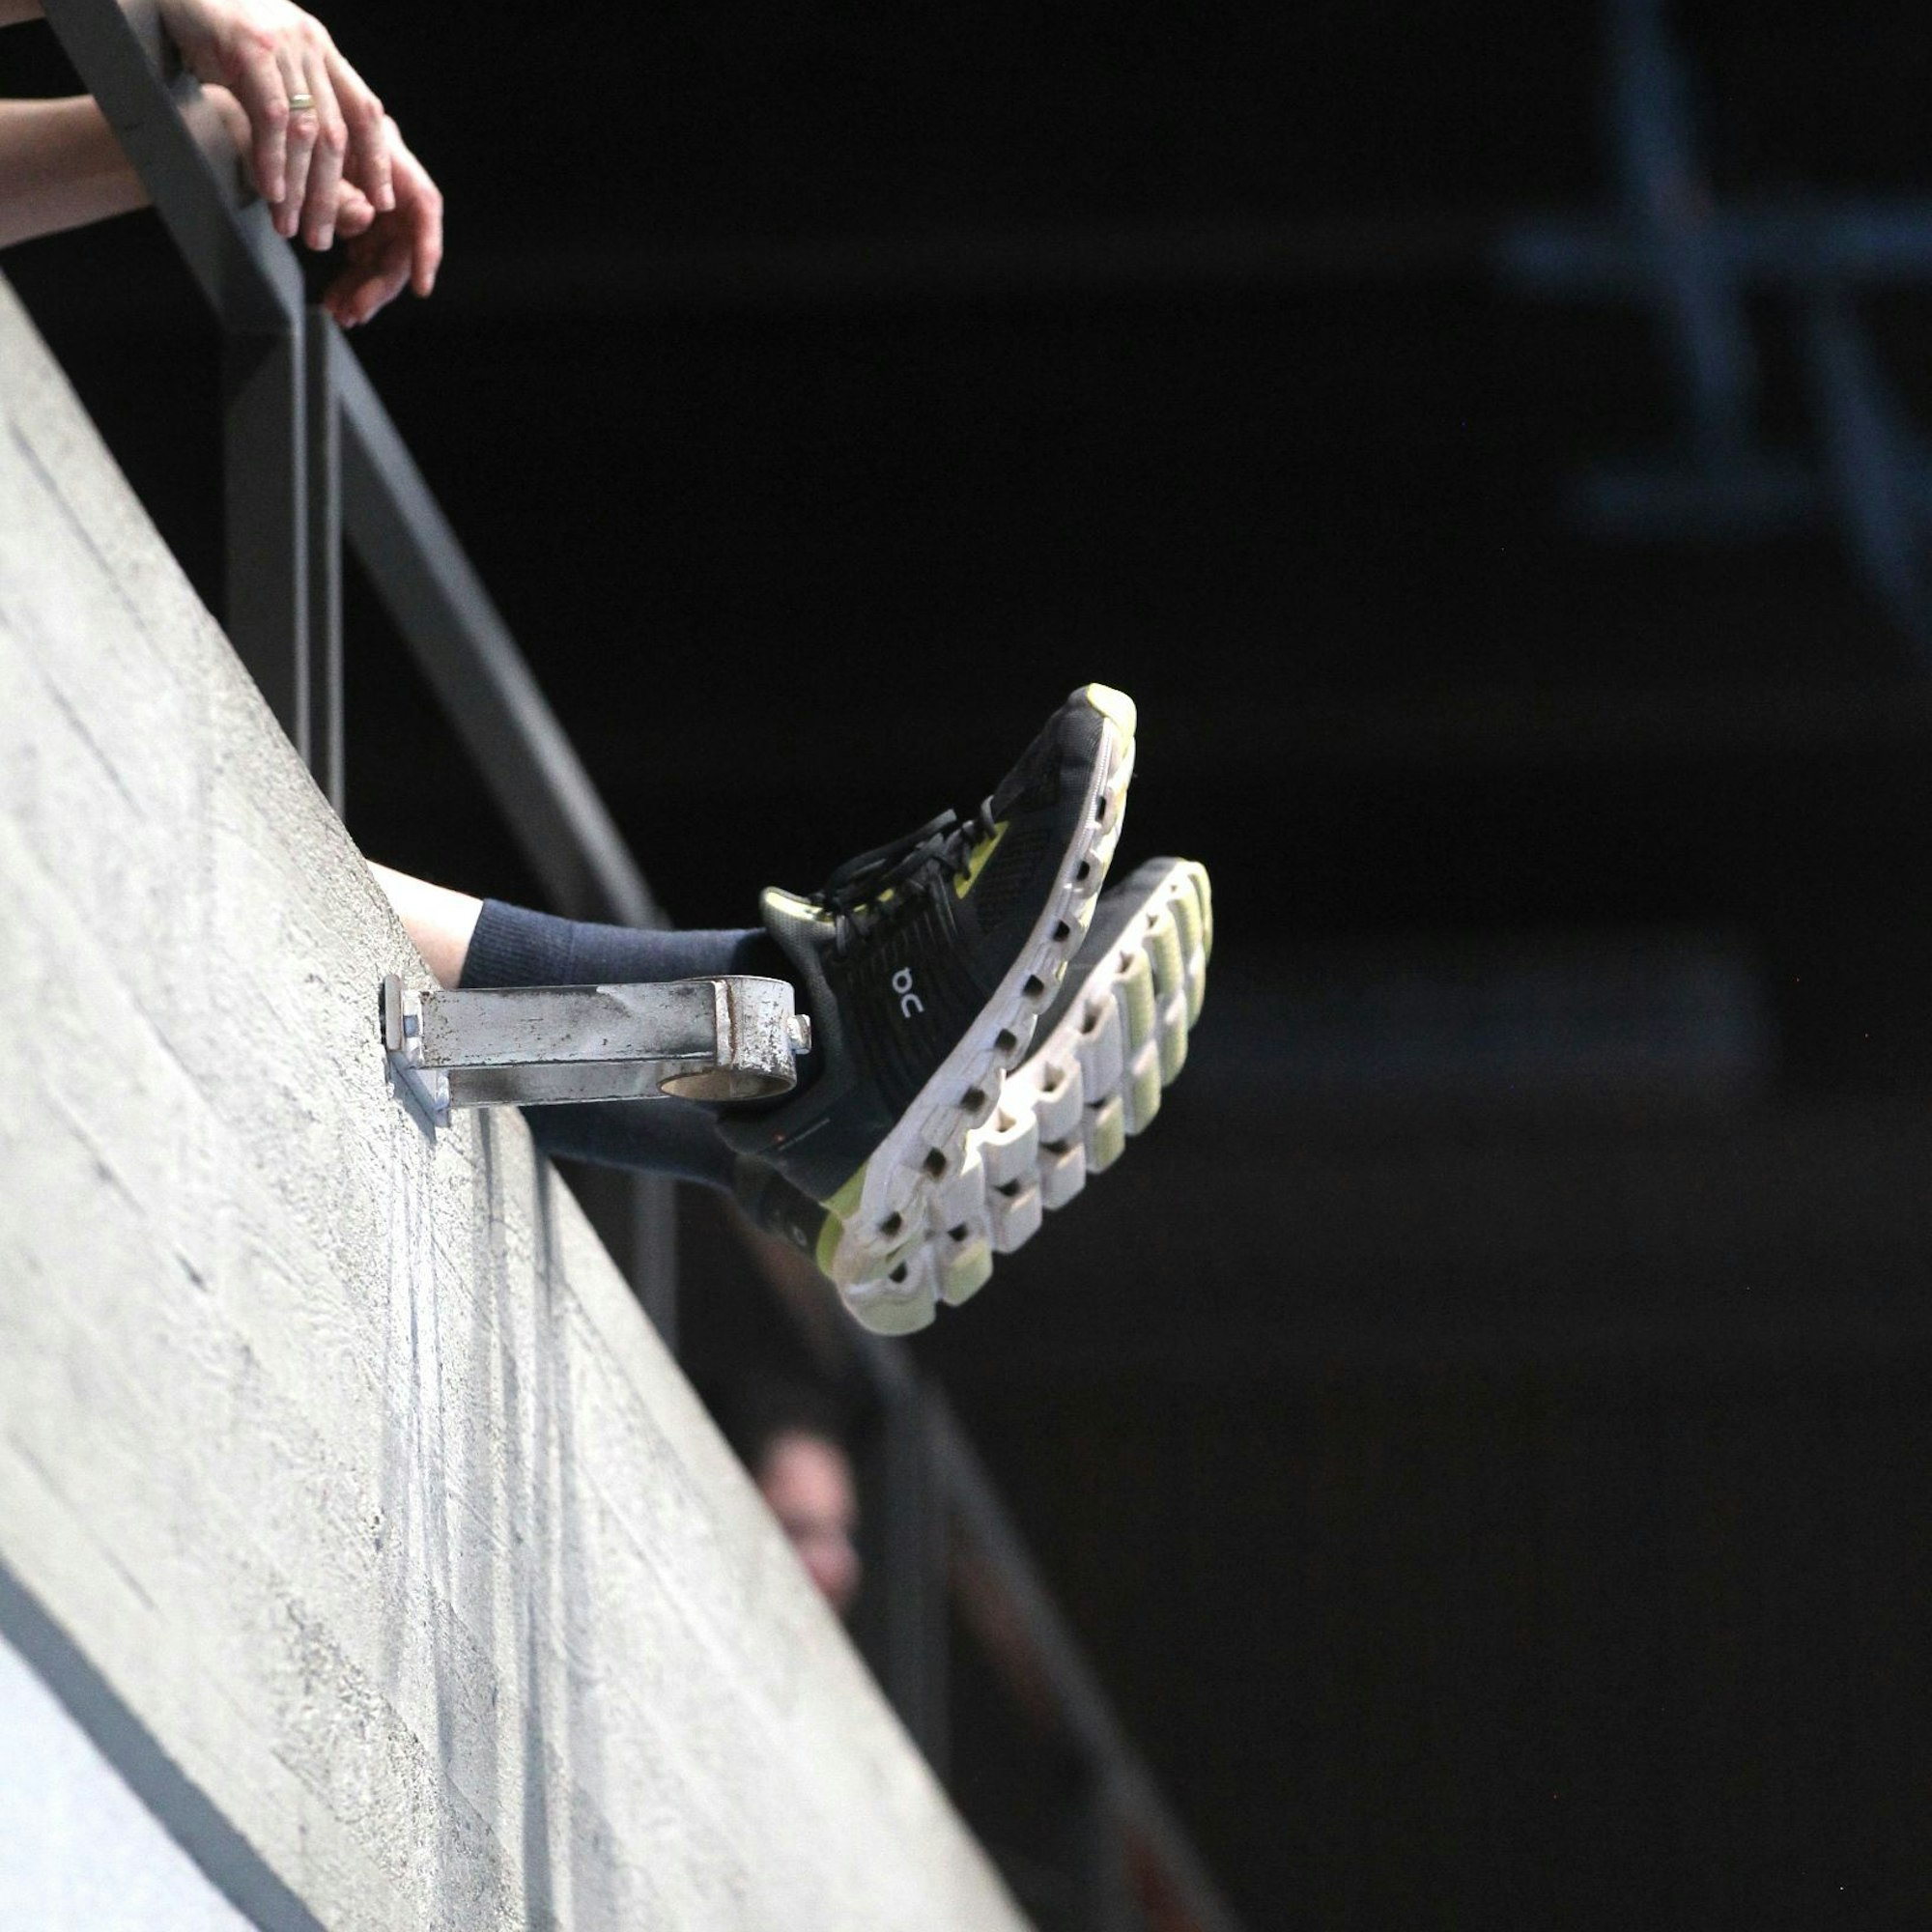 Füße eines Zuschauers auf der Tribüne hängen über den Betonrand hinaus in der Luft.